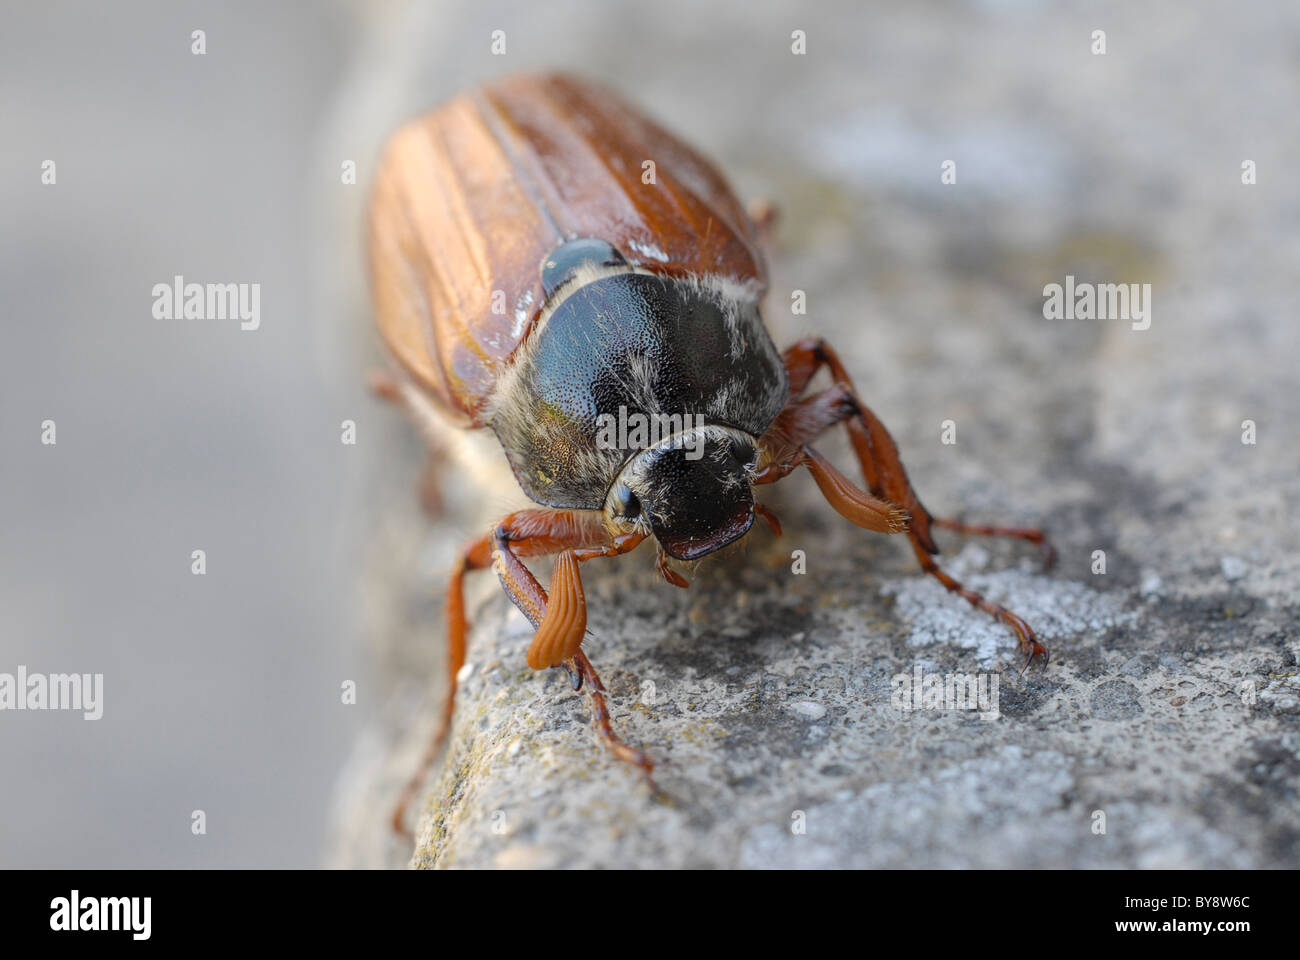 Un plan macro sur une catégorie : commune, peut Bug, Billy, sorcière ou Spang Beetle sur une pierre l'étape. Ils volent en mai d'où le nom. Banque D'Images